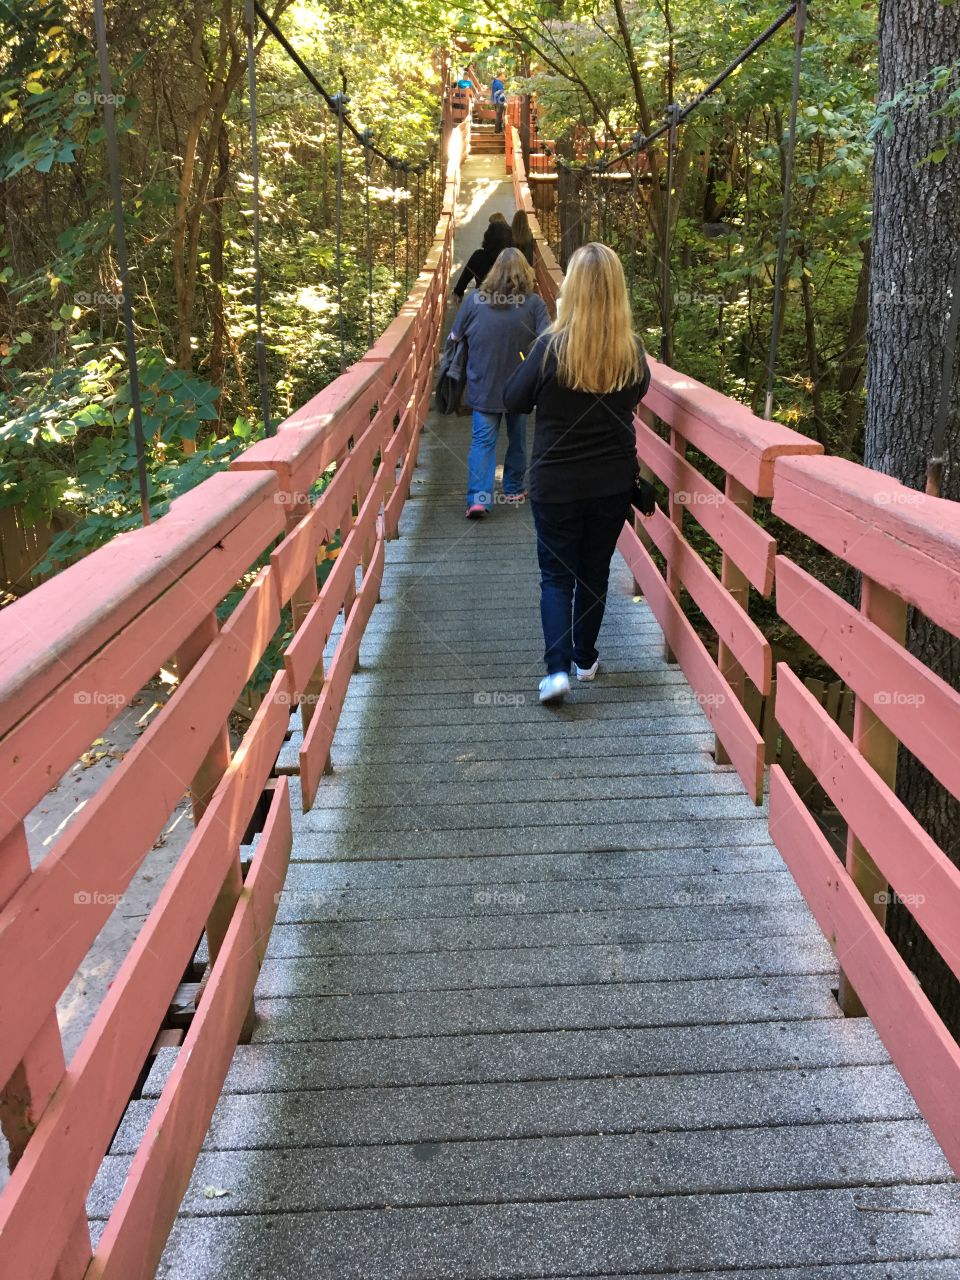 A walk on a bridge